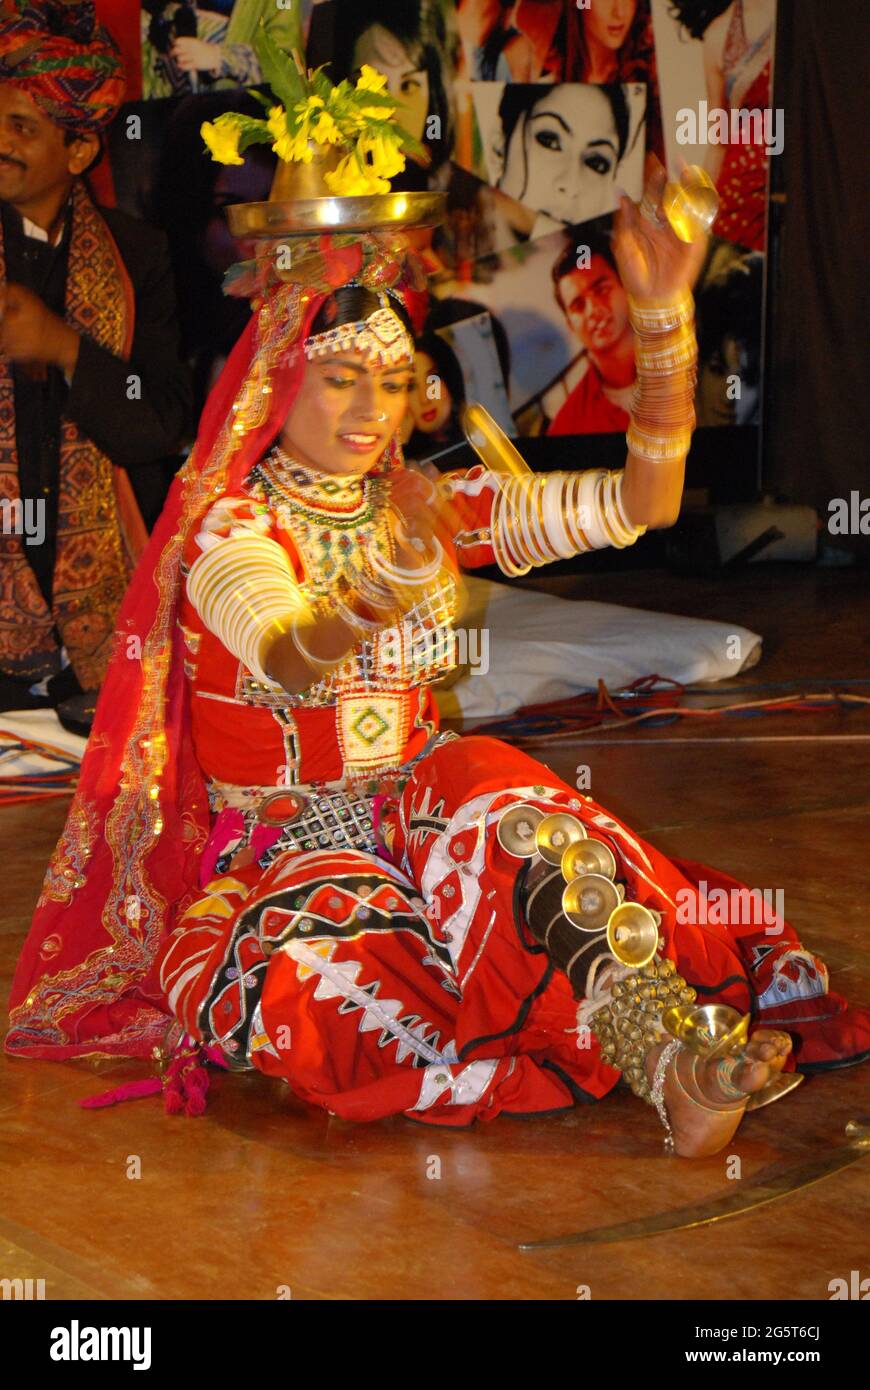 Danse en Inde, danseuse de vêtements traditionnels, Inde, Radschastan, Jodhpur Banque D'Images